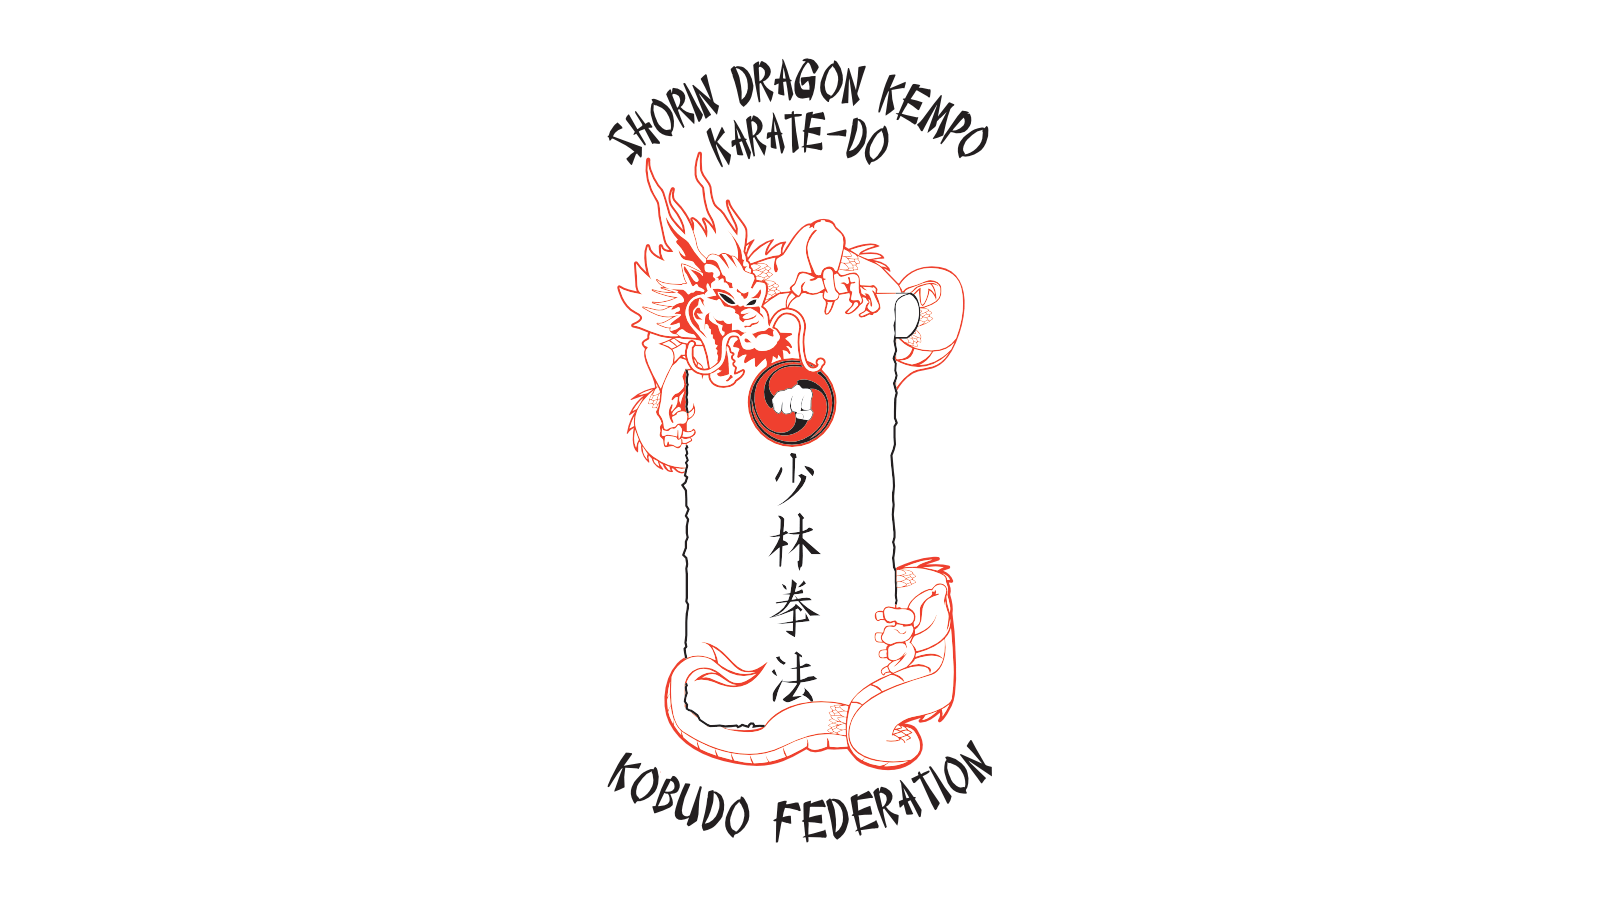 Shorin Dragon Kempo Karate-Do 2014